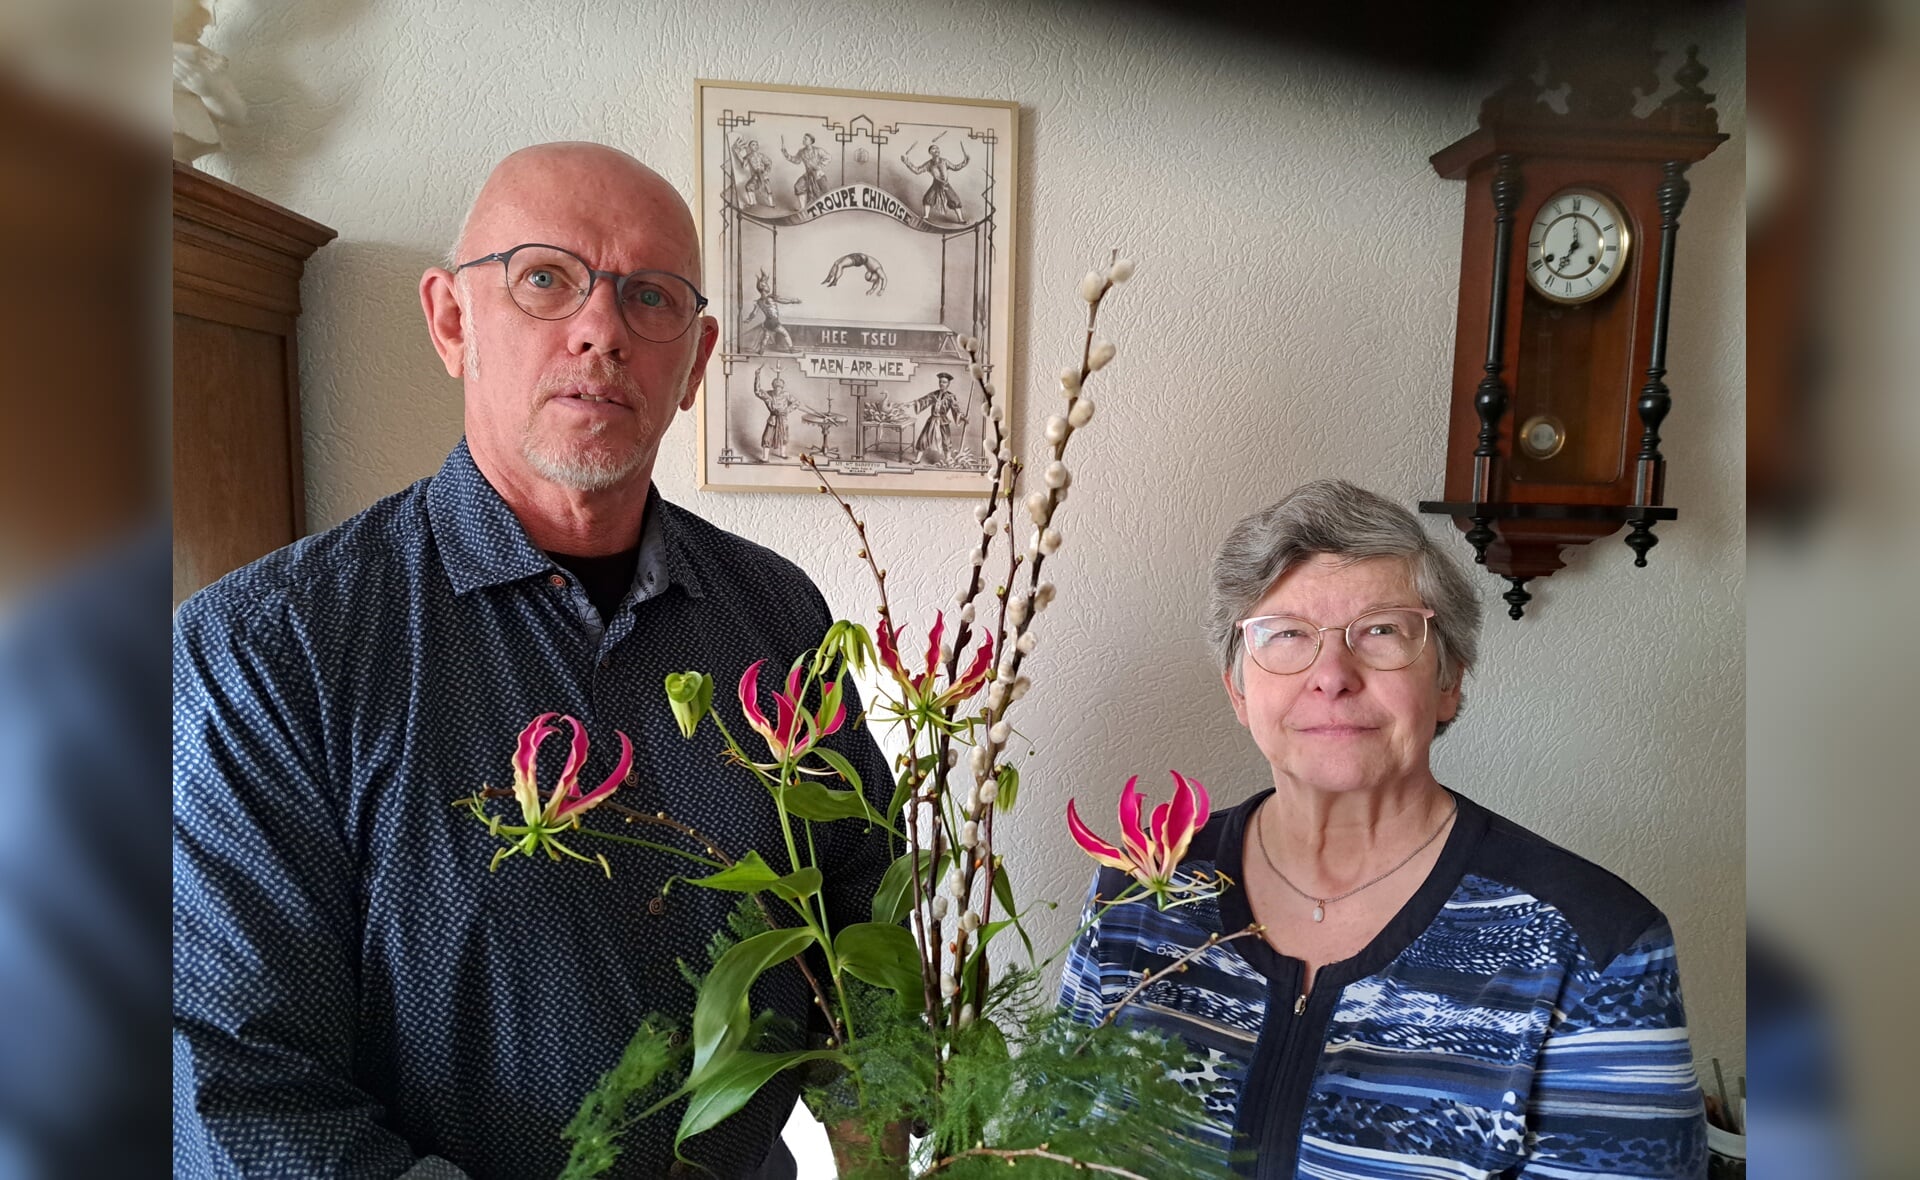 Paulien Schouten viert andermaal een gouden jubileum, dit jaar als collectant voor de plaatselijke afdeling van de Hartstichting. Jan Coolen, coördinator in Boxtel, zette de vrijwilligster deze week in de bloemen.